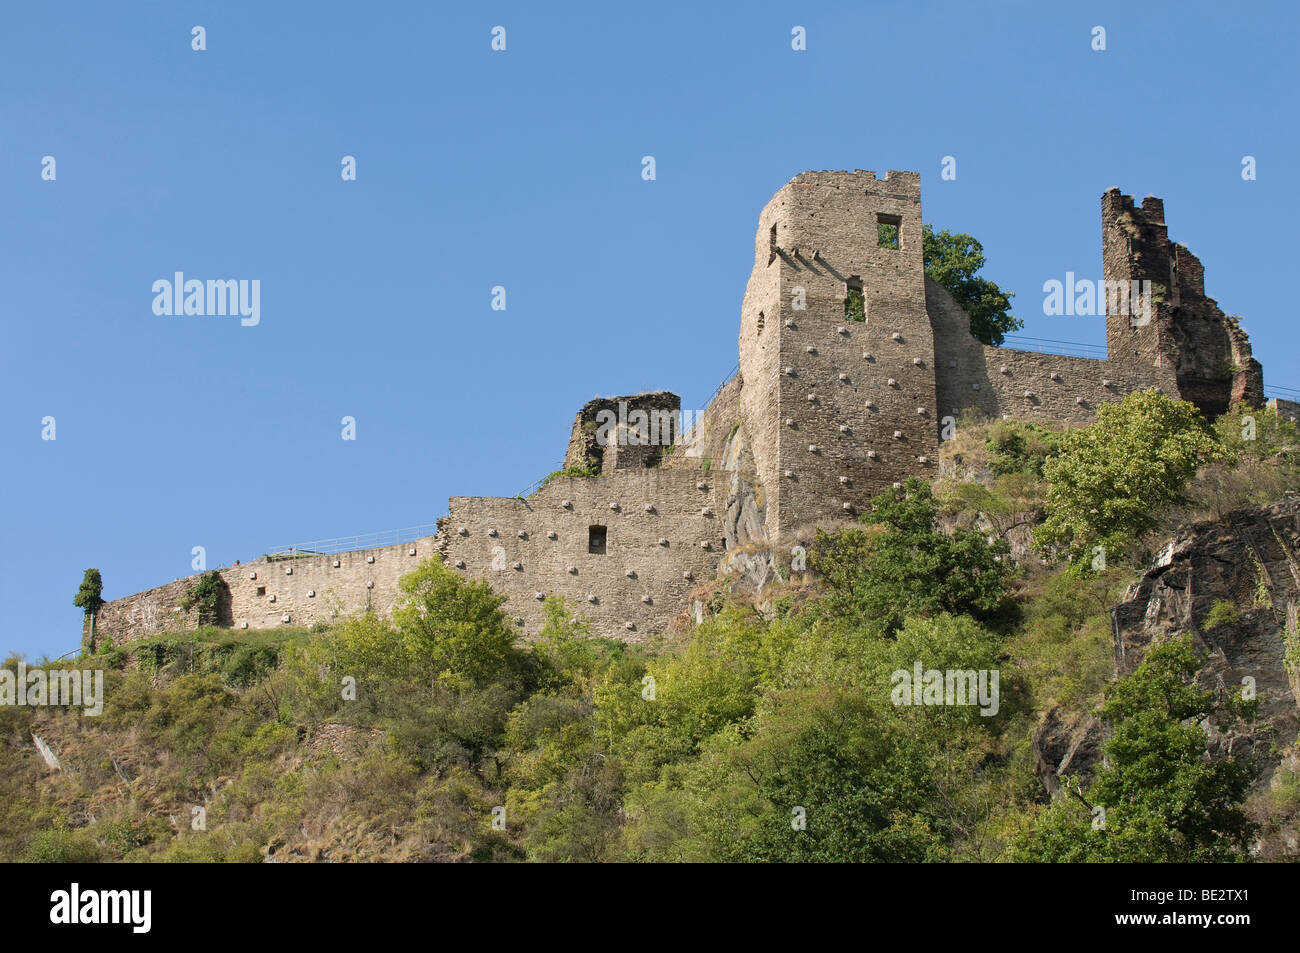 Vista desde el Ahr sobre las ruinas del castillo Burg Ahr, valle Ahrtal, Renania-Palatinado, Alemania, Europa Foto de stock